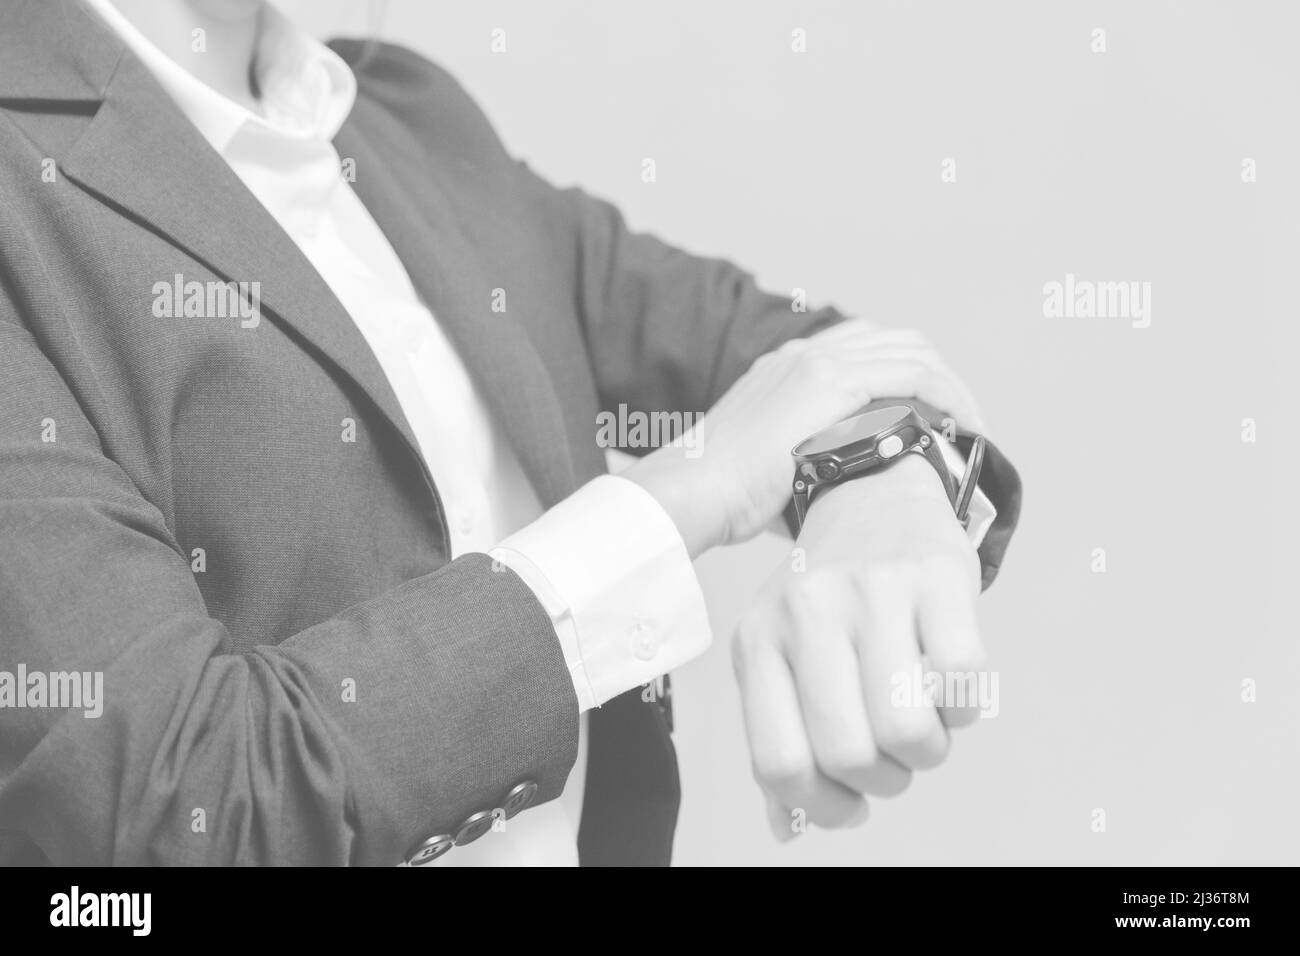 Menschen sehen Armbanduhr für Geschäftszeiten oder Arbeitszeiten schwarz-weiß Farbe für den Hintergrund. Stockfoto